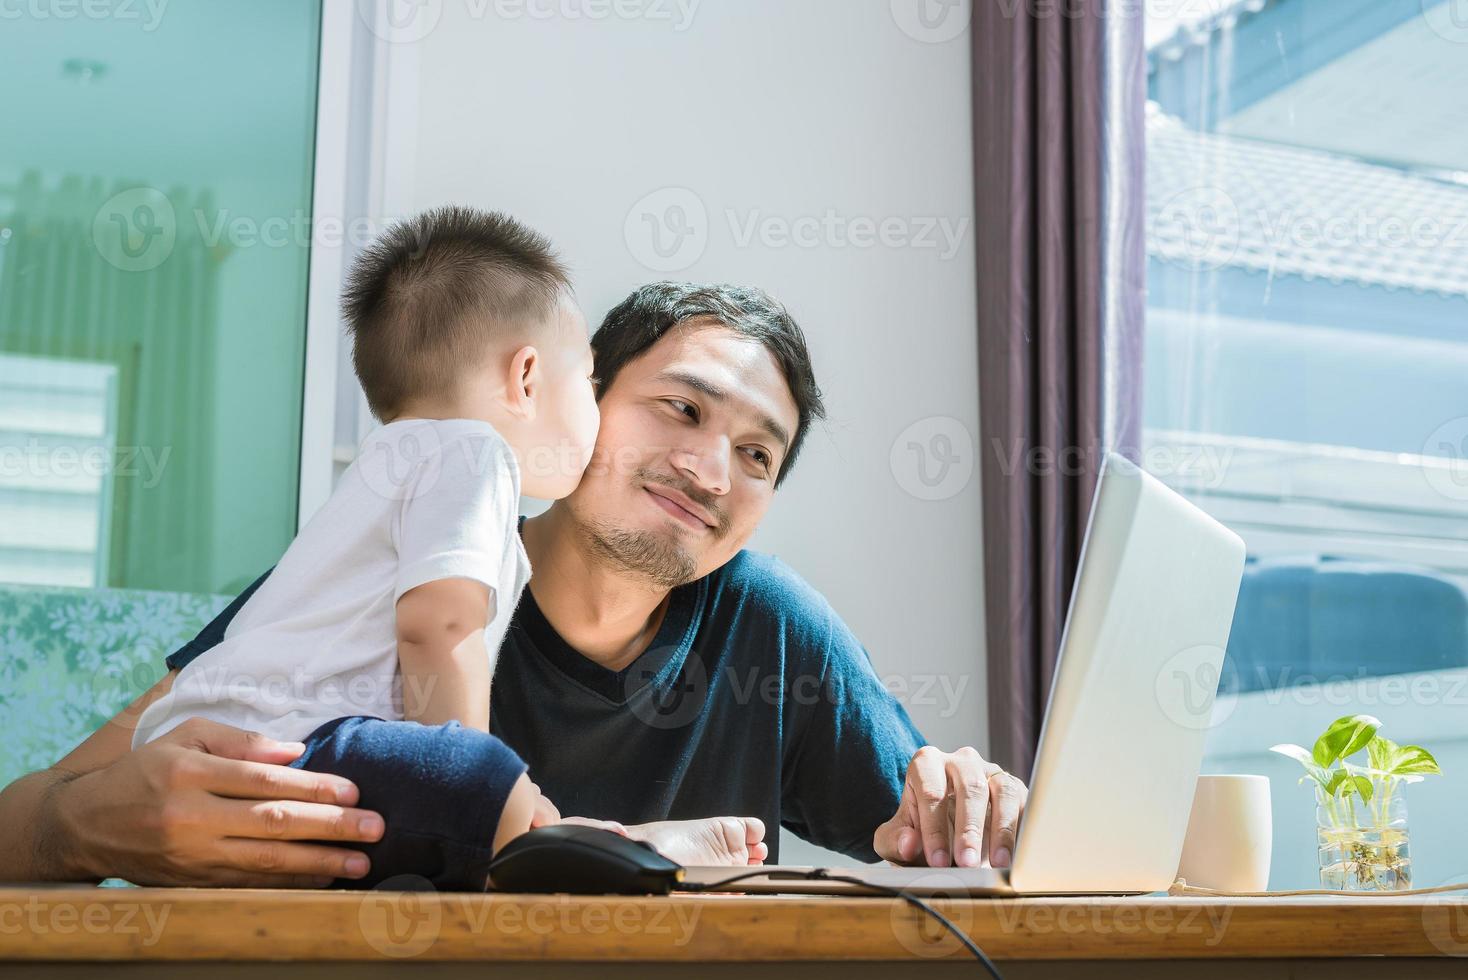 Sohn, der seinen Vater küsst, während er das Internet benutzt. Menschen und Lebensstile foto